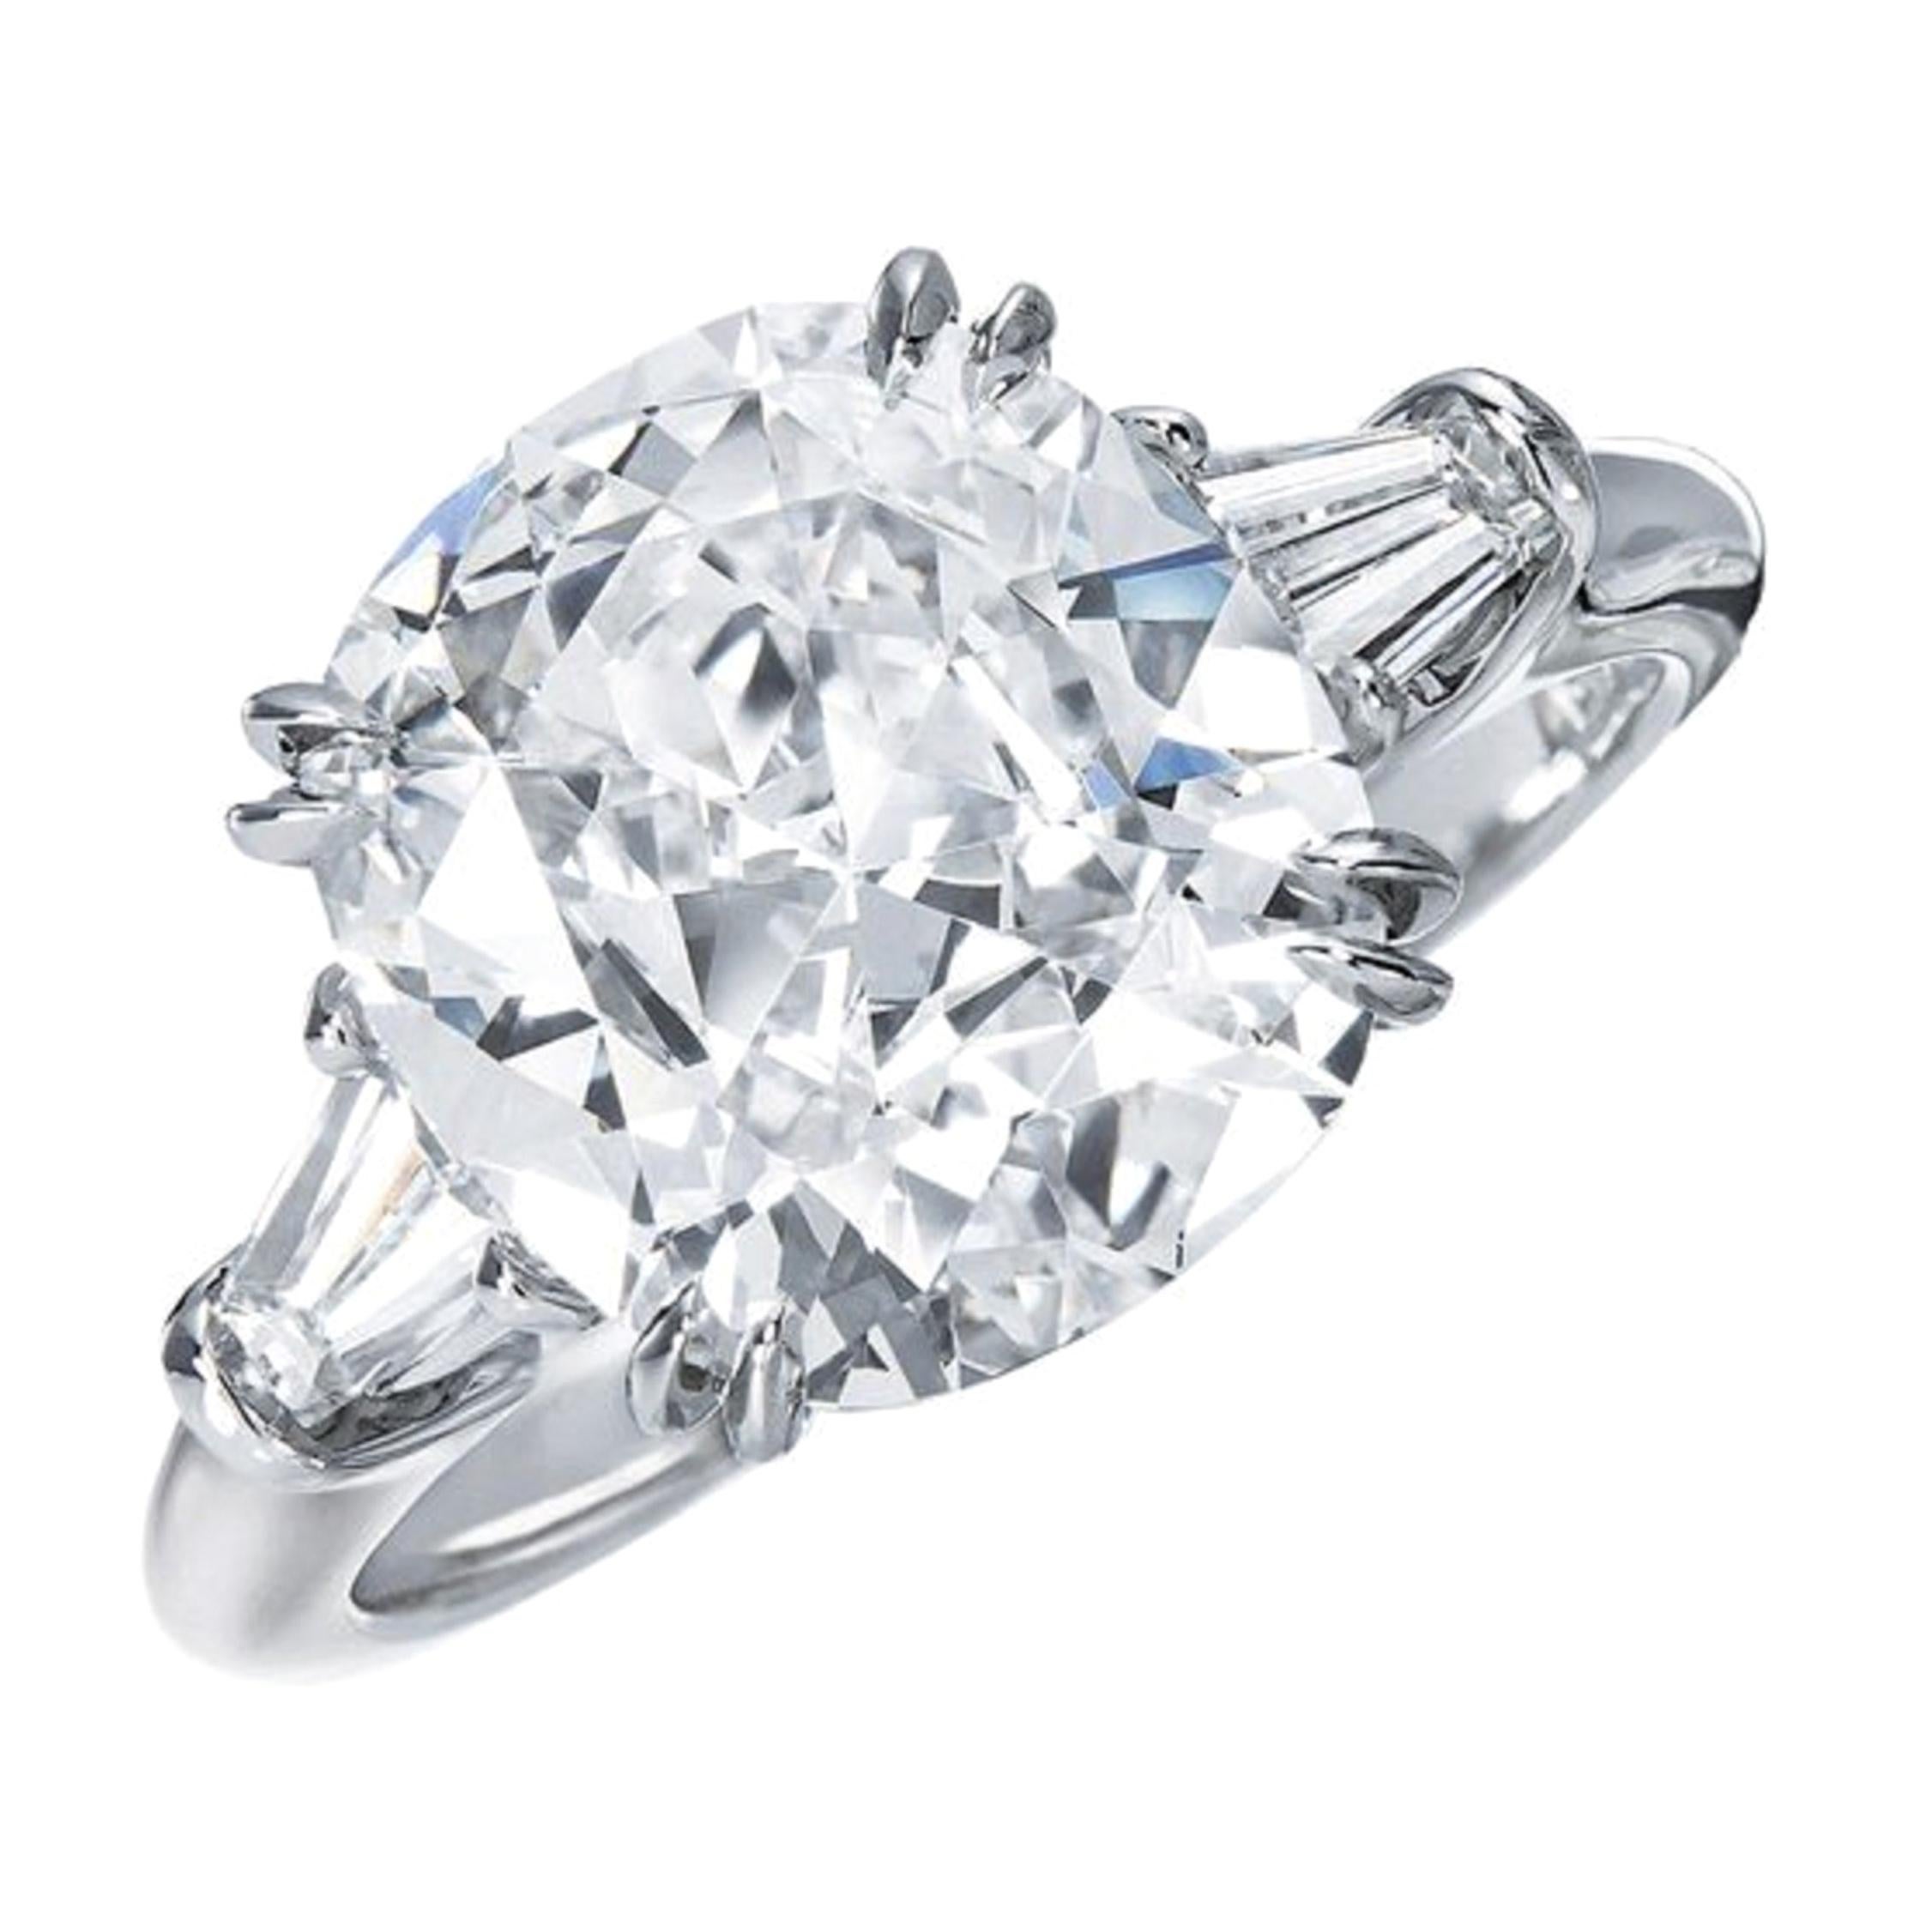 Bague solitaire en platine certifiée GIA avec diamant taille coussin de 9 carats de couleur D